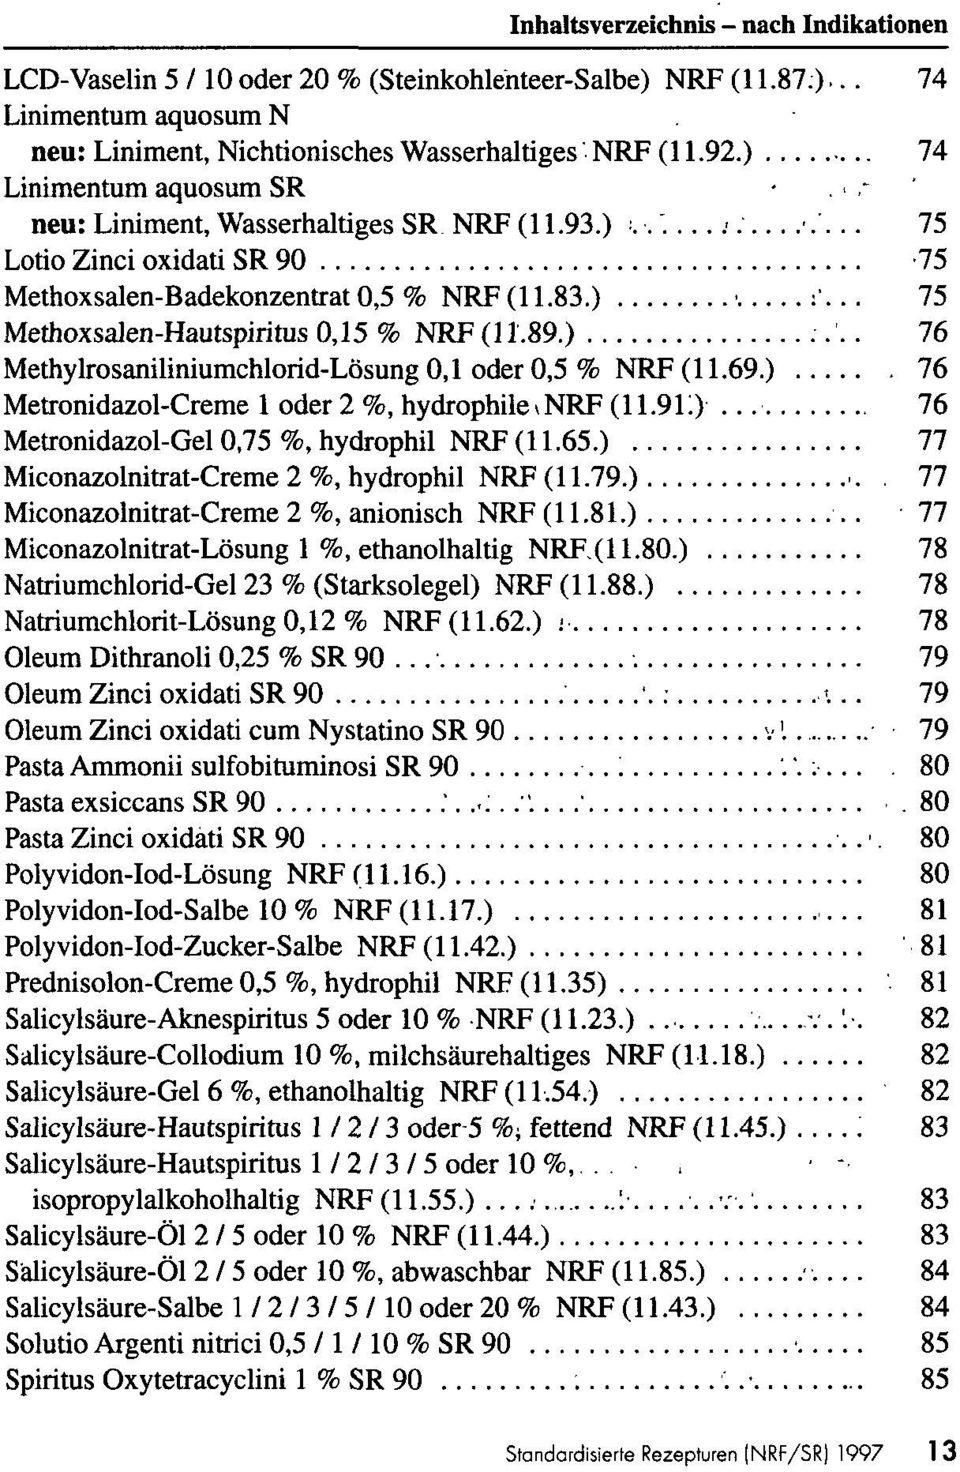 .. 75 Methoxsalen-Hautspiritus 0,15 % NRF (11.89.) 76 Mefhylrosaniliniumchlorid-Lösung 0,1 oder 0,5 % NRF (11.69.) 76 Metronidazol-Creme 1 oder 2 %, hydrophile > NRF (11.